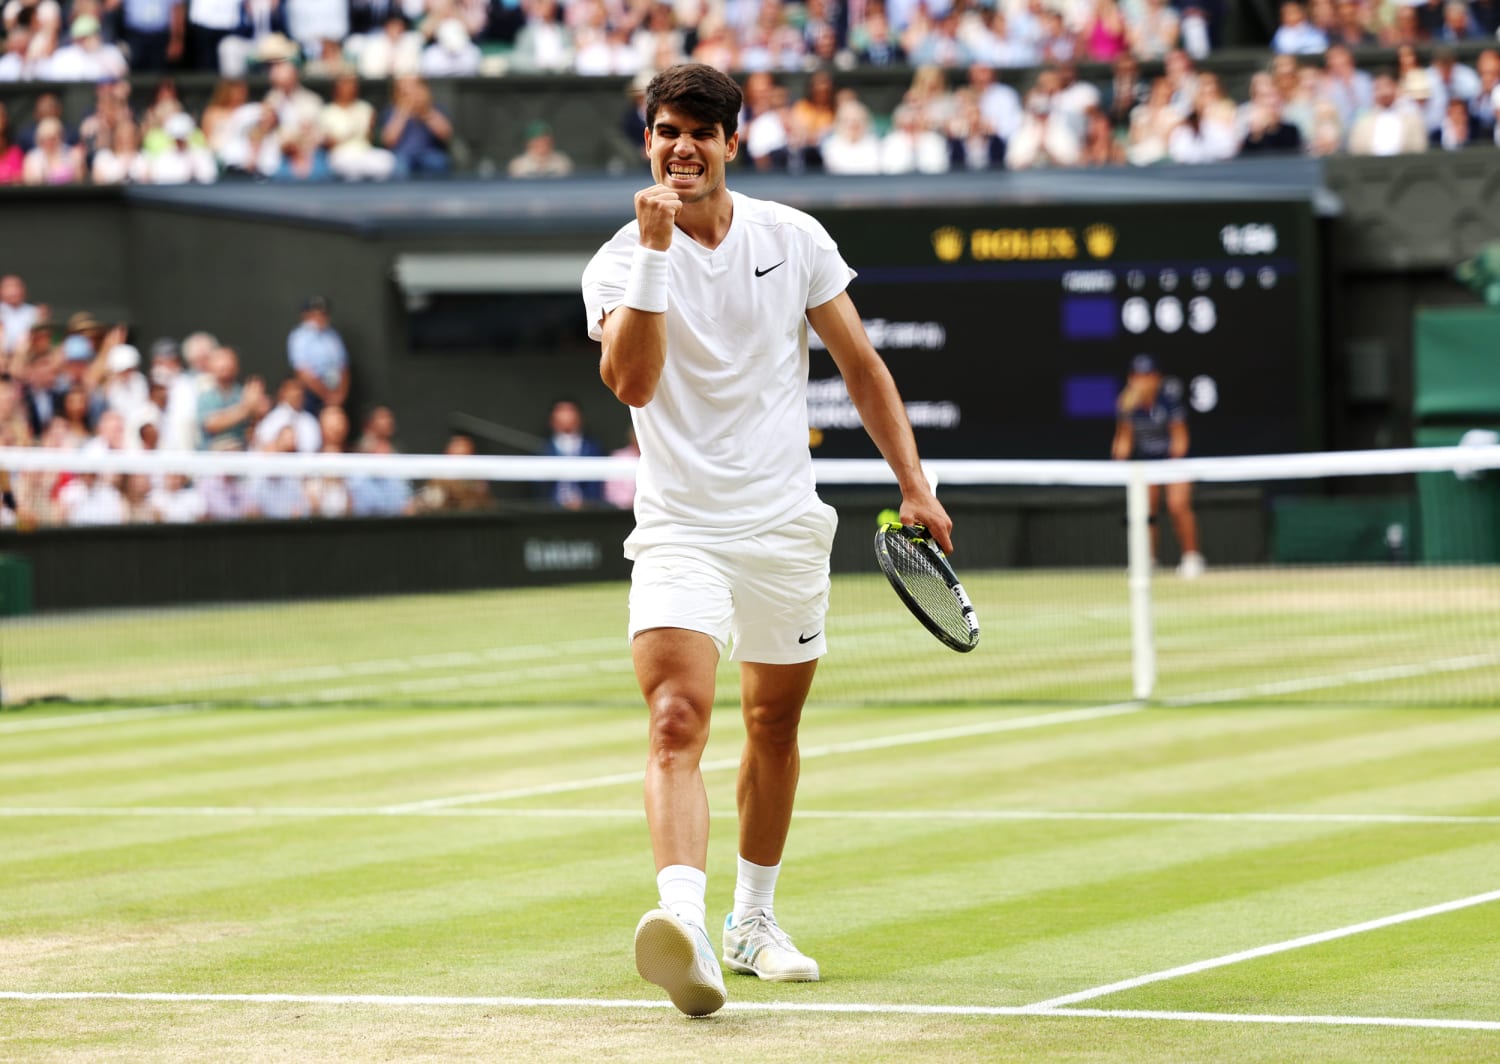 Carlos Alvarez vence Novak Djokovic e conquista o título de Wimbledon pelo segundo ano consecutivo